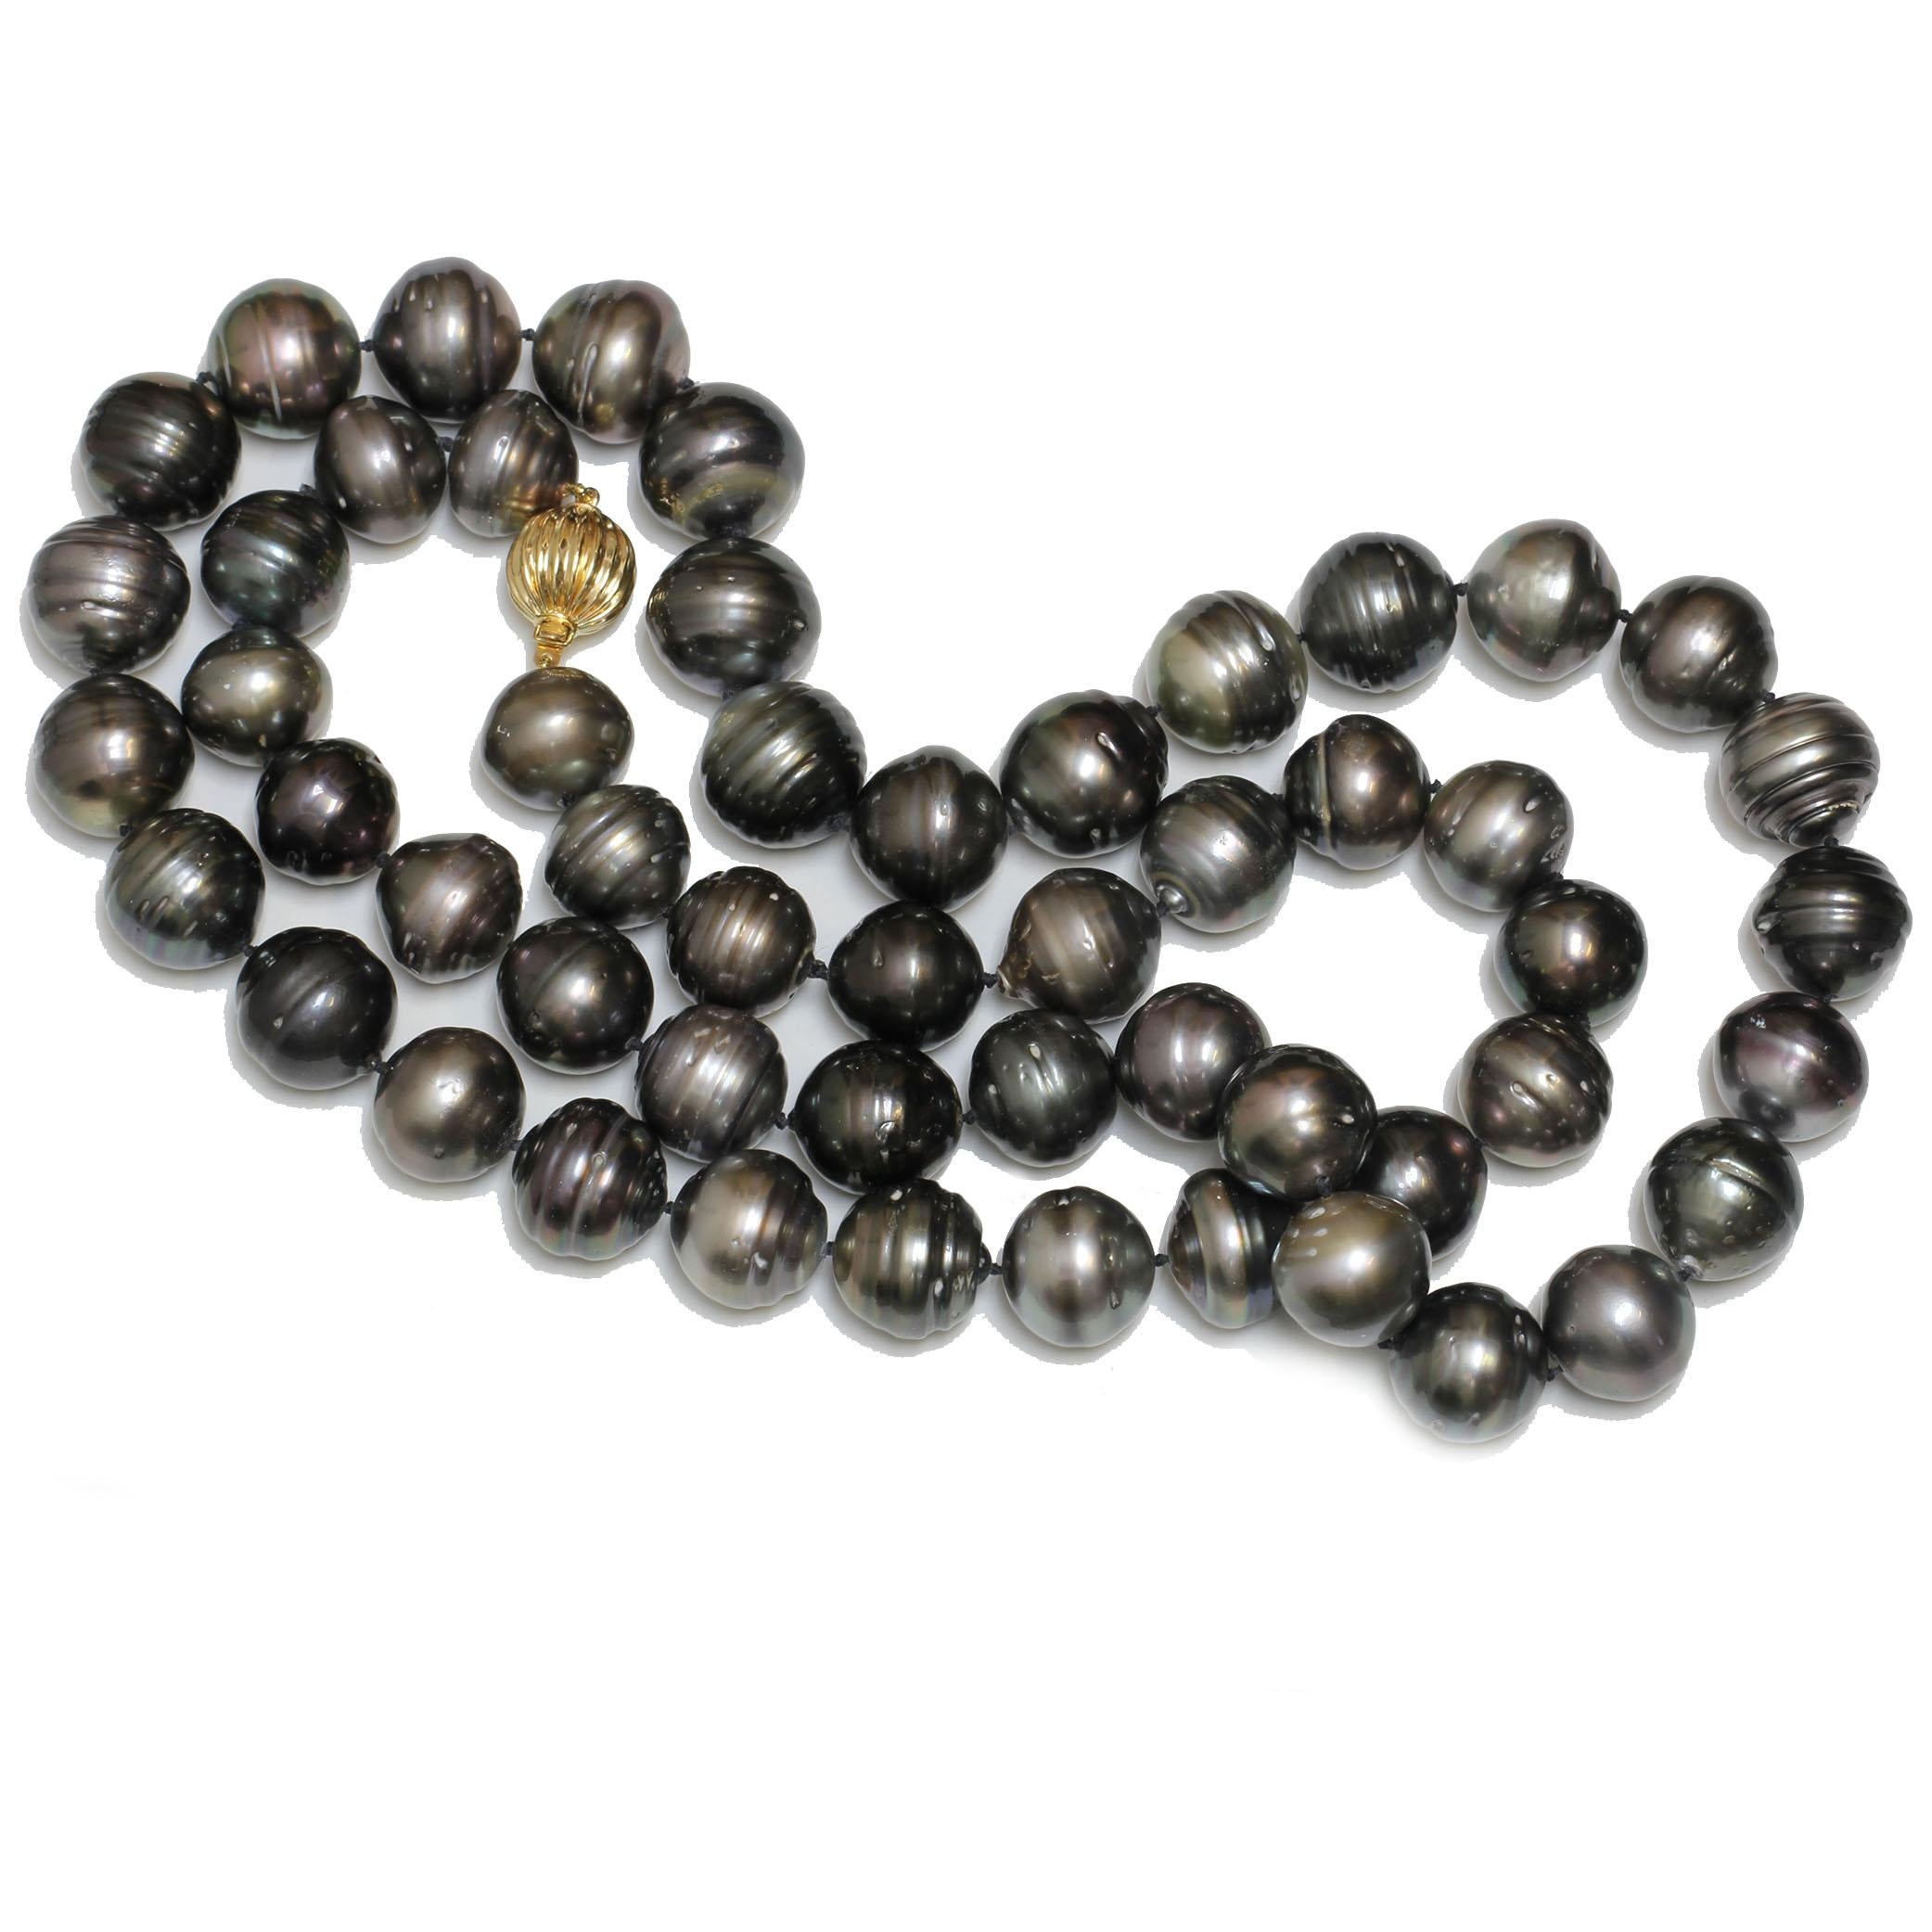 Herkunft:	Französisch-Polynesien
Perlen-Typ:	Tahiti-Perlen
Perle Größe:	17.3 - 15.0 MM
Perle Farbe:	Natürliches Multicolor Schwarz, Grün und Grautöne
Perlenform:	Fast rund / Kurzes Oval
Oberfläche der Perle: AAA-
Perlglanz:	AAA